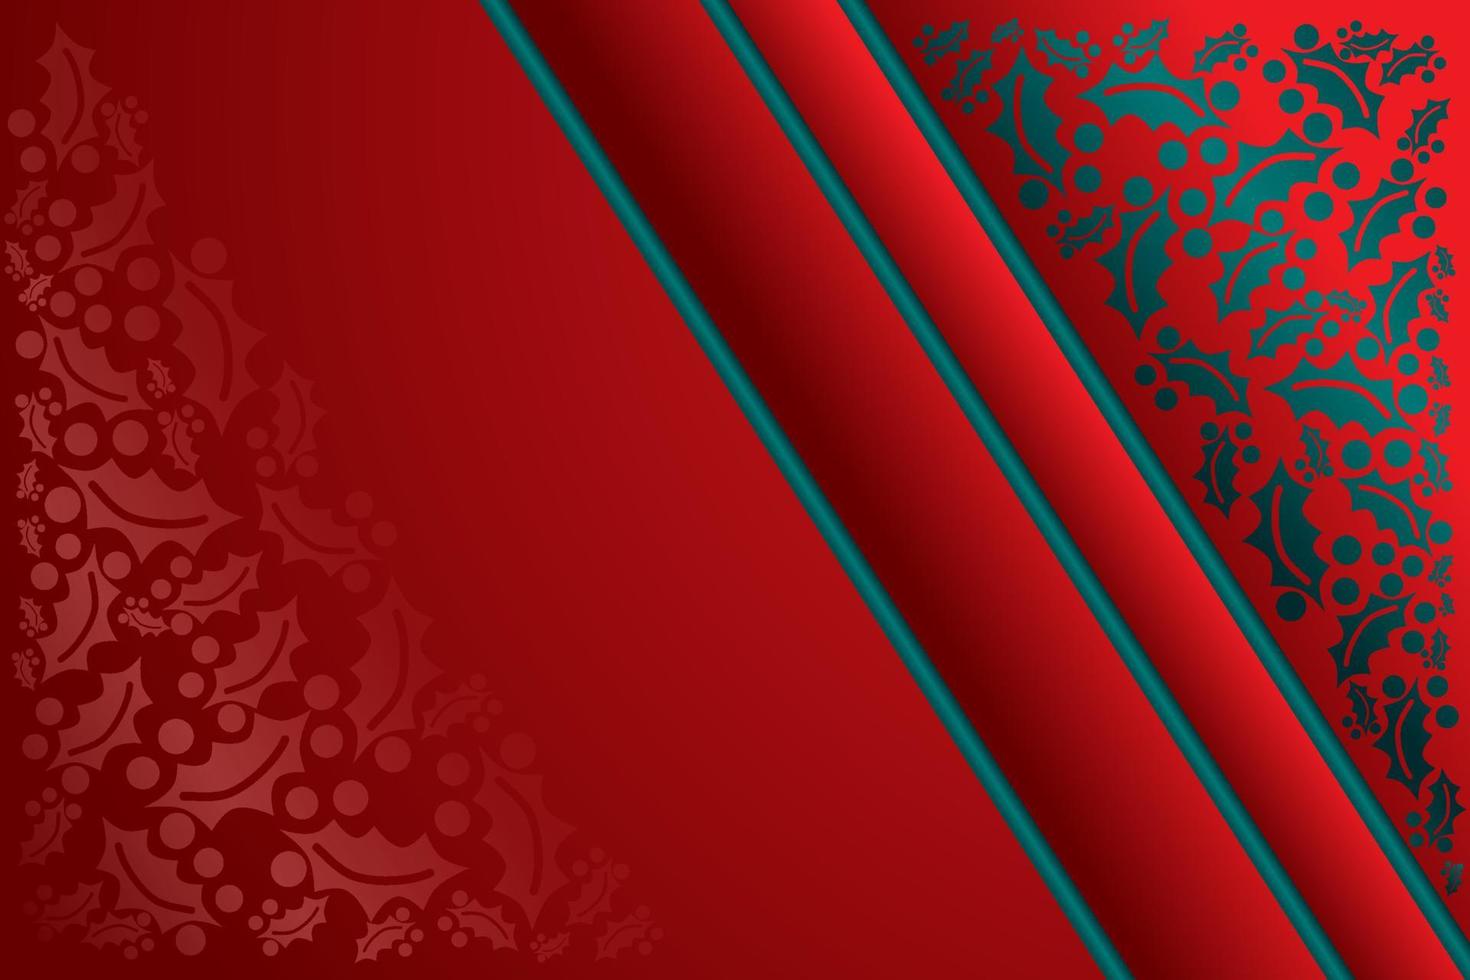 guirlanda de natal de imagem vetorial de ramos de azevinho em um fundo vermelho, ornamento para a decoração de cartões, banners. cores de ano novo, vermelho e verde. vetor